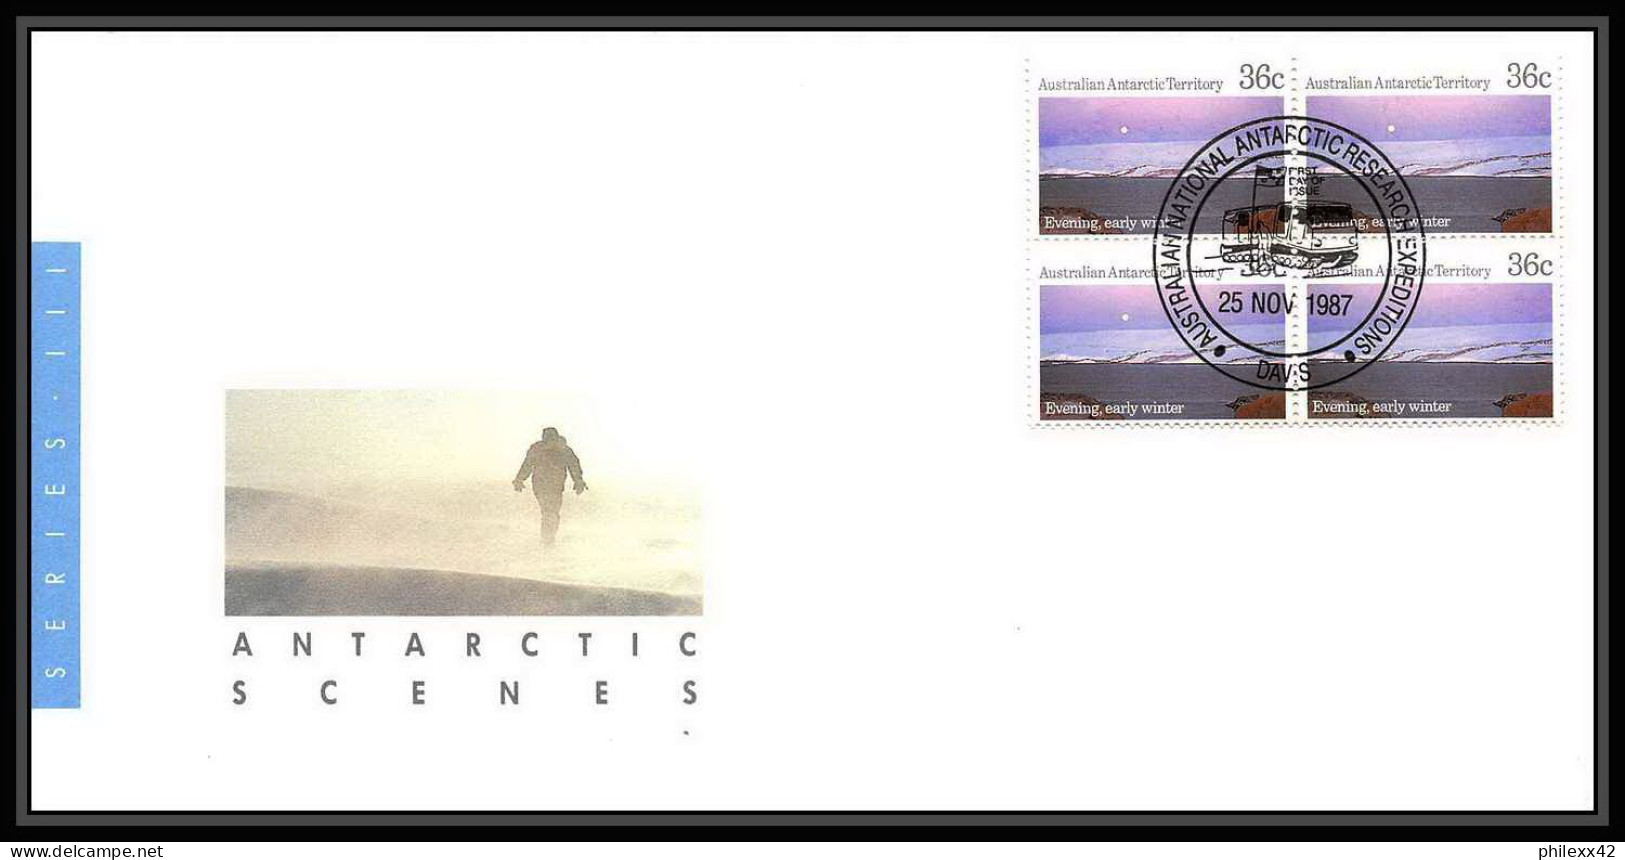 0984 Antarctic Polar Antarctica australian Antarctic territory Lettre (cover) 1987 5 lettres